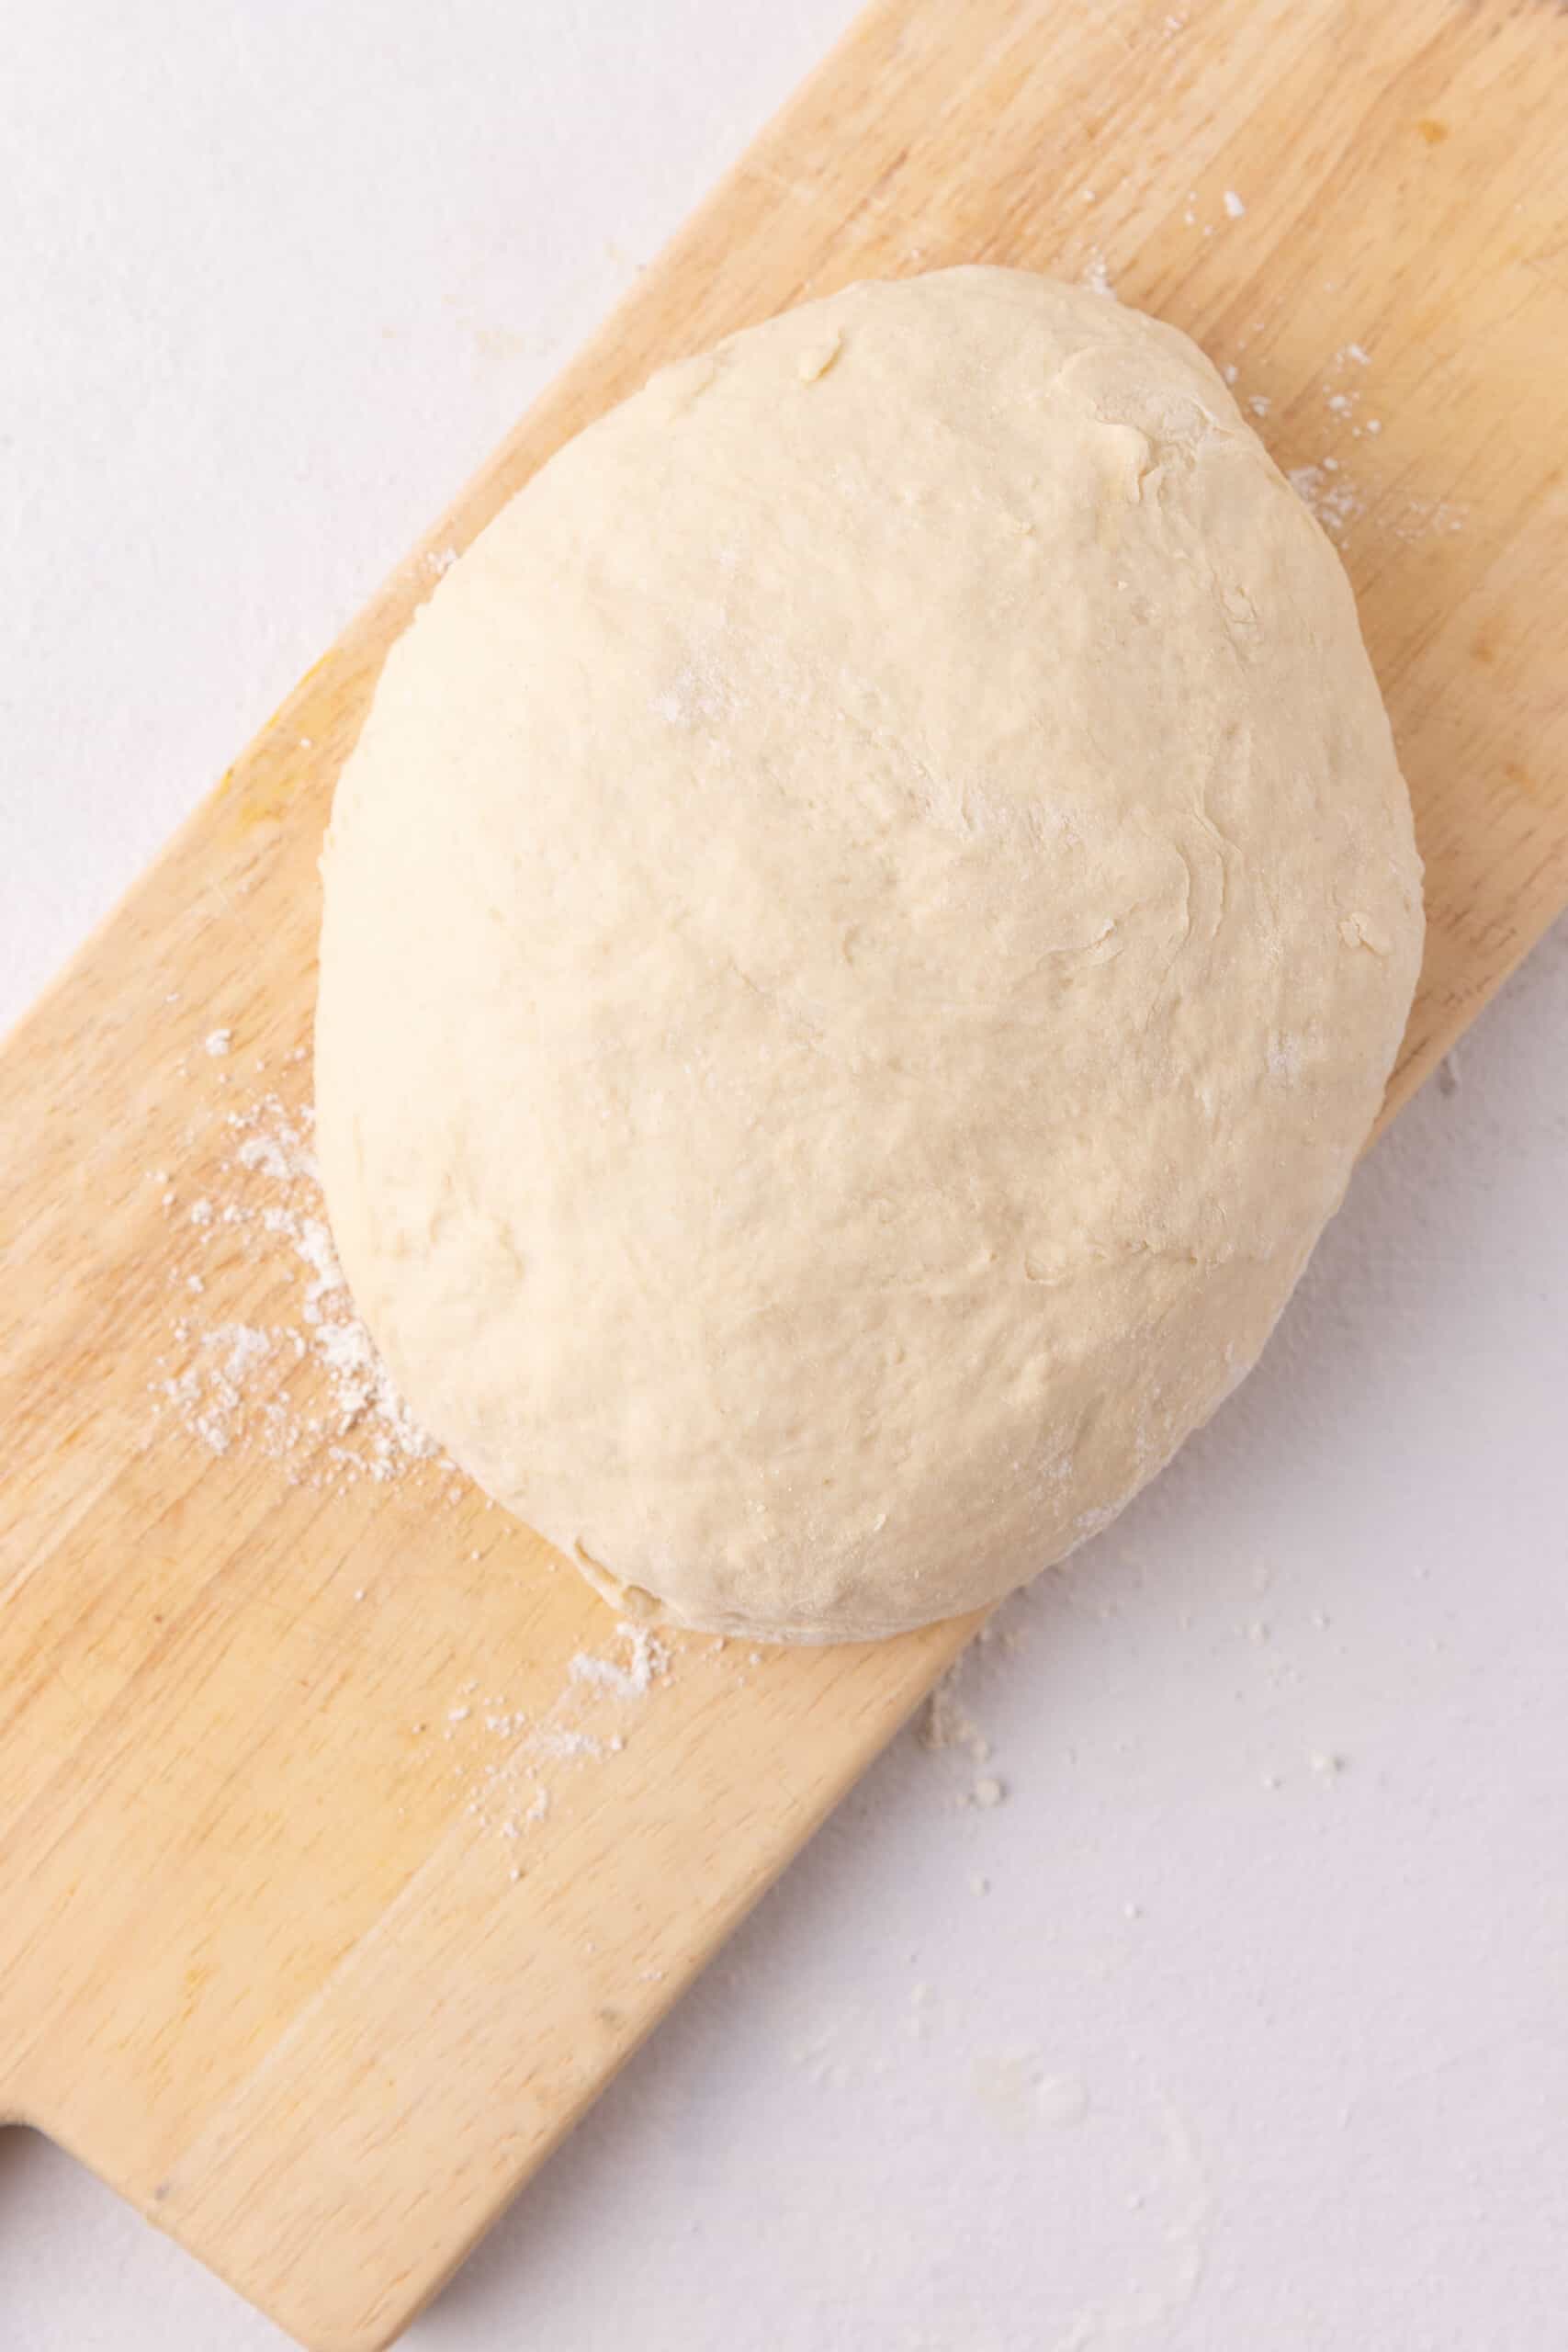 Round bread dough.